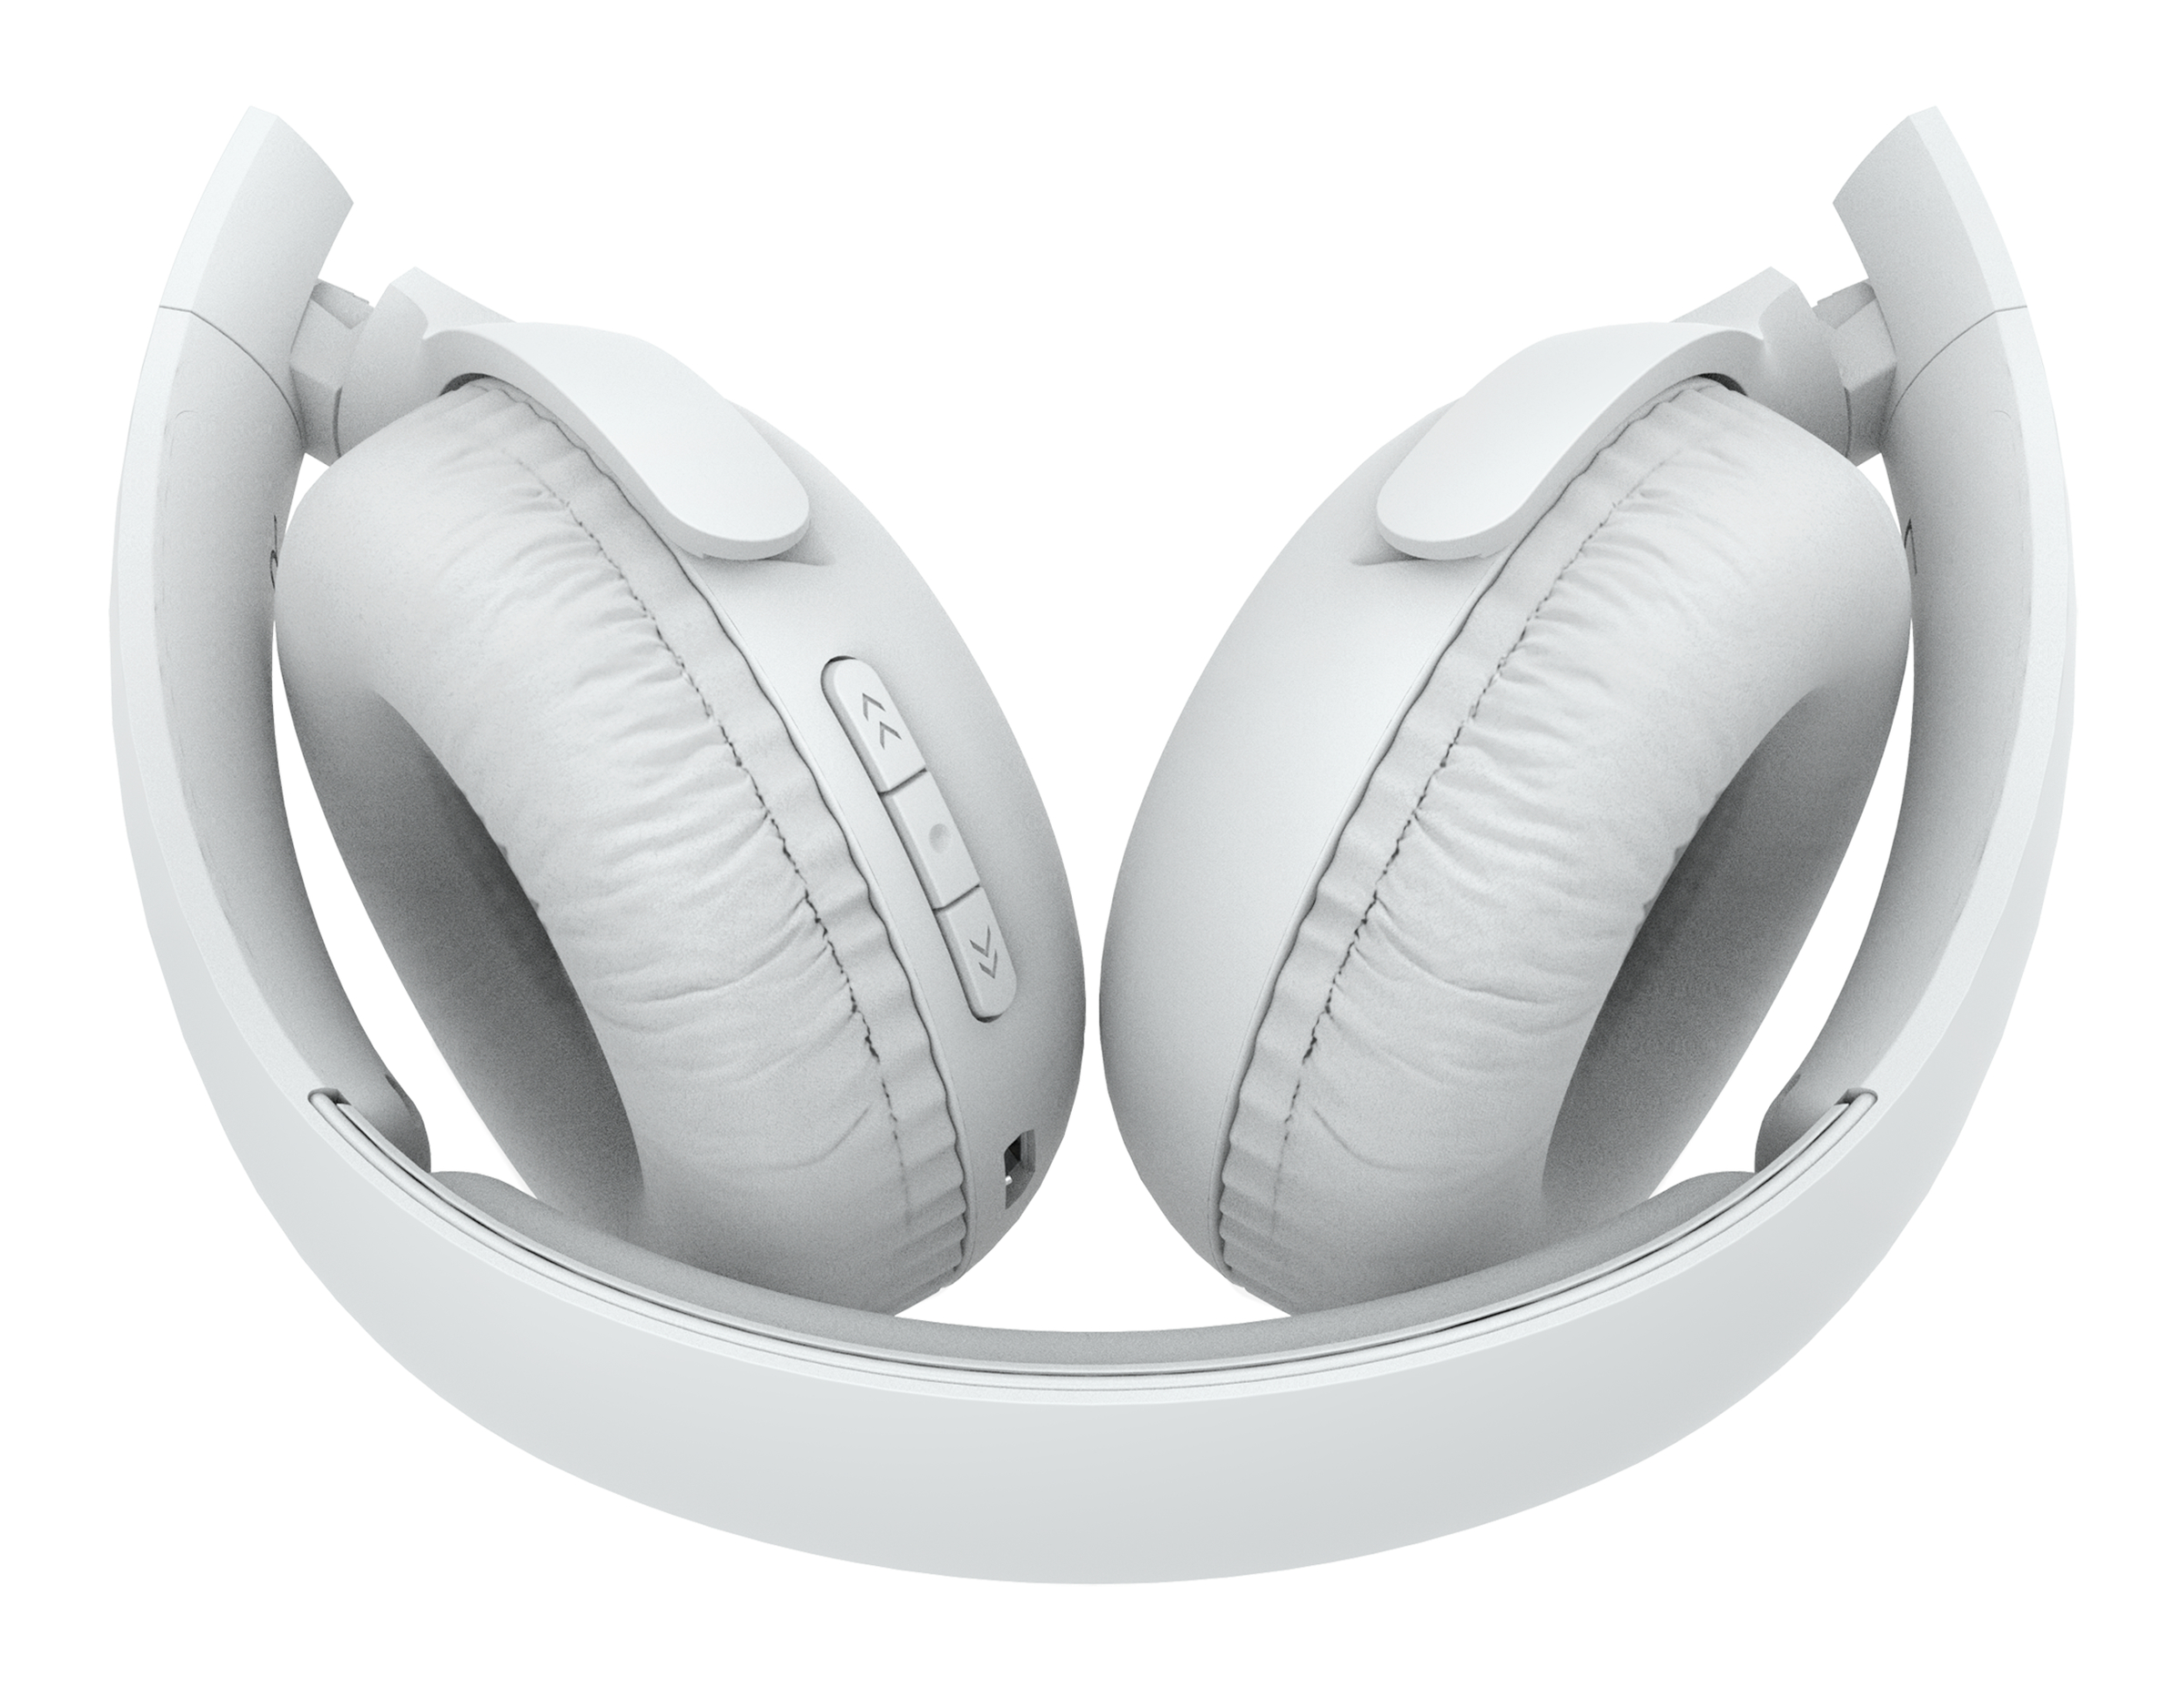 PHILIPS UH202WT, On-ear Kopfhörer Bluetooth Weiß